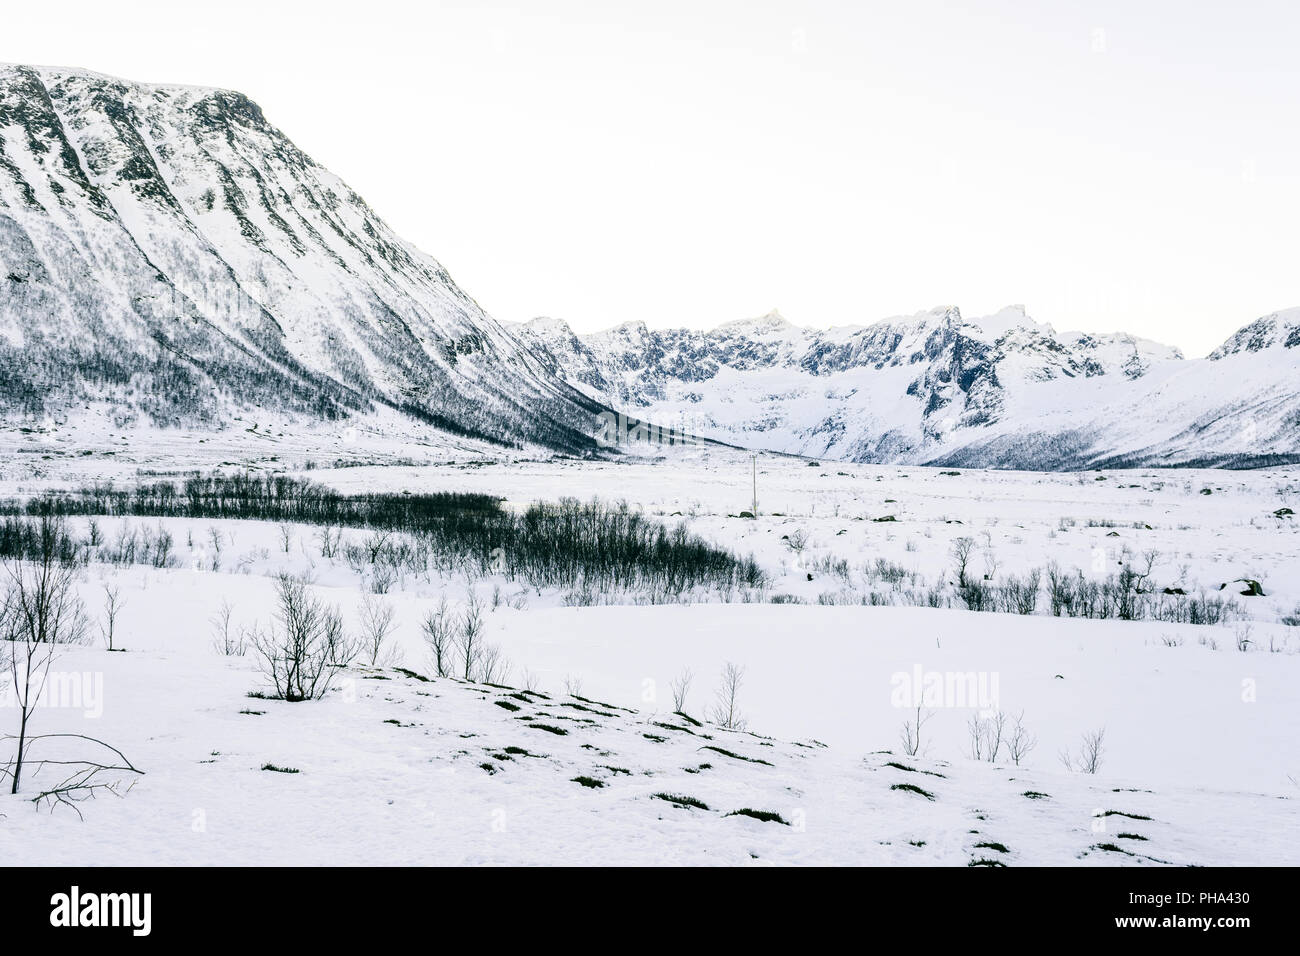 Snow landscape, Norway Stock Photo